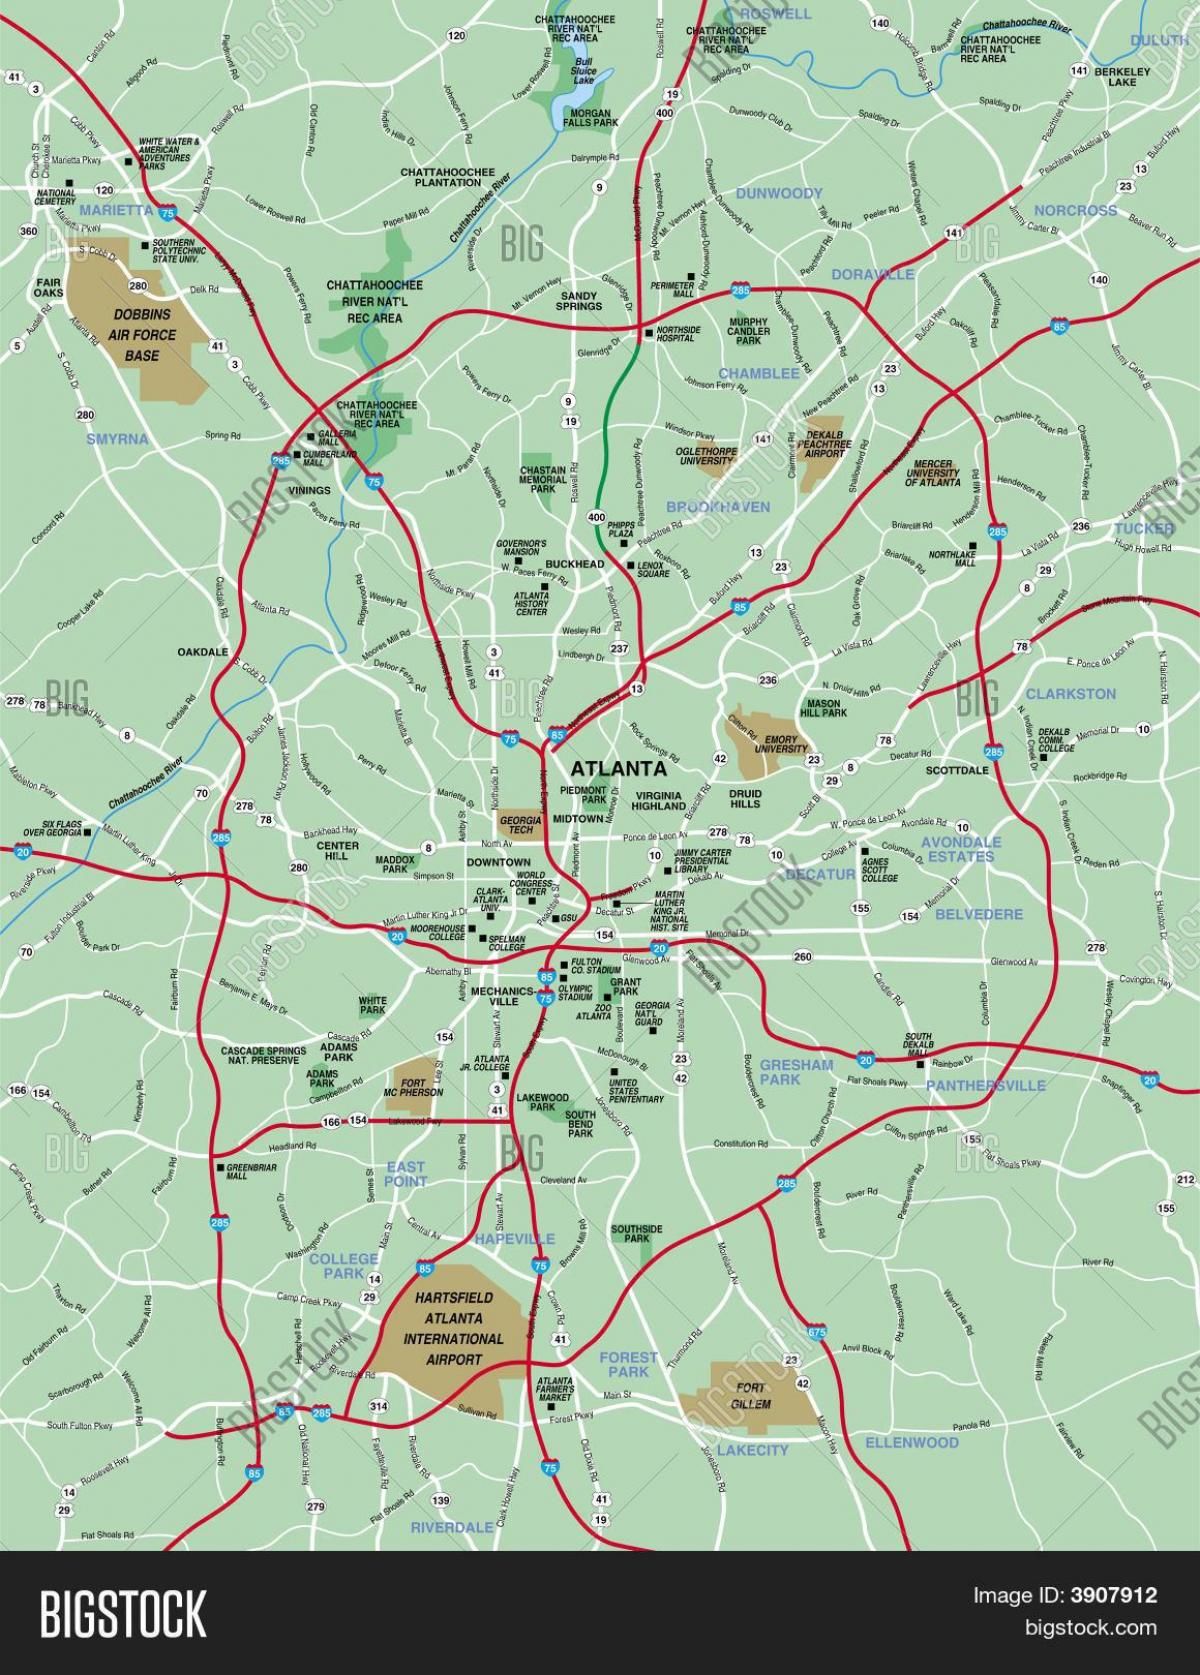 greater Atlanta-området kart